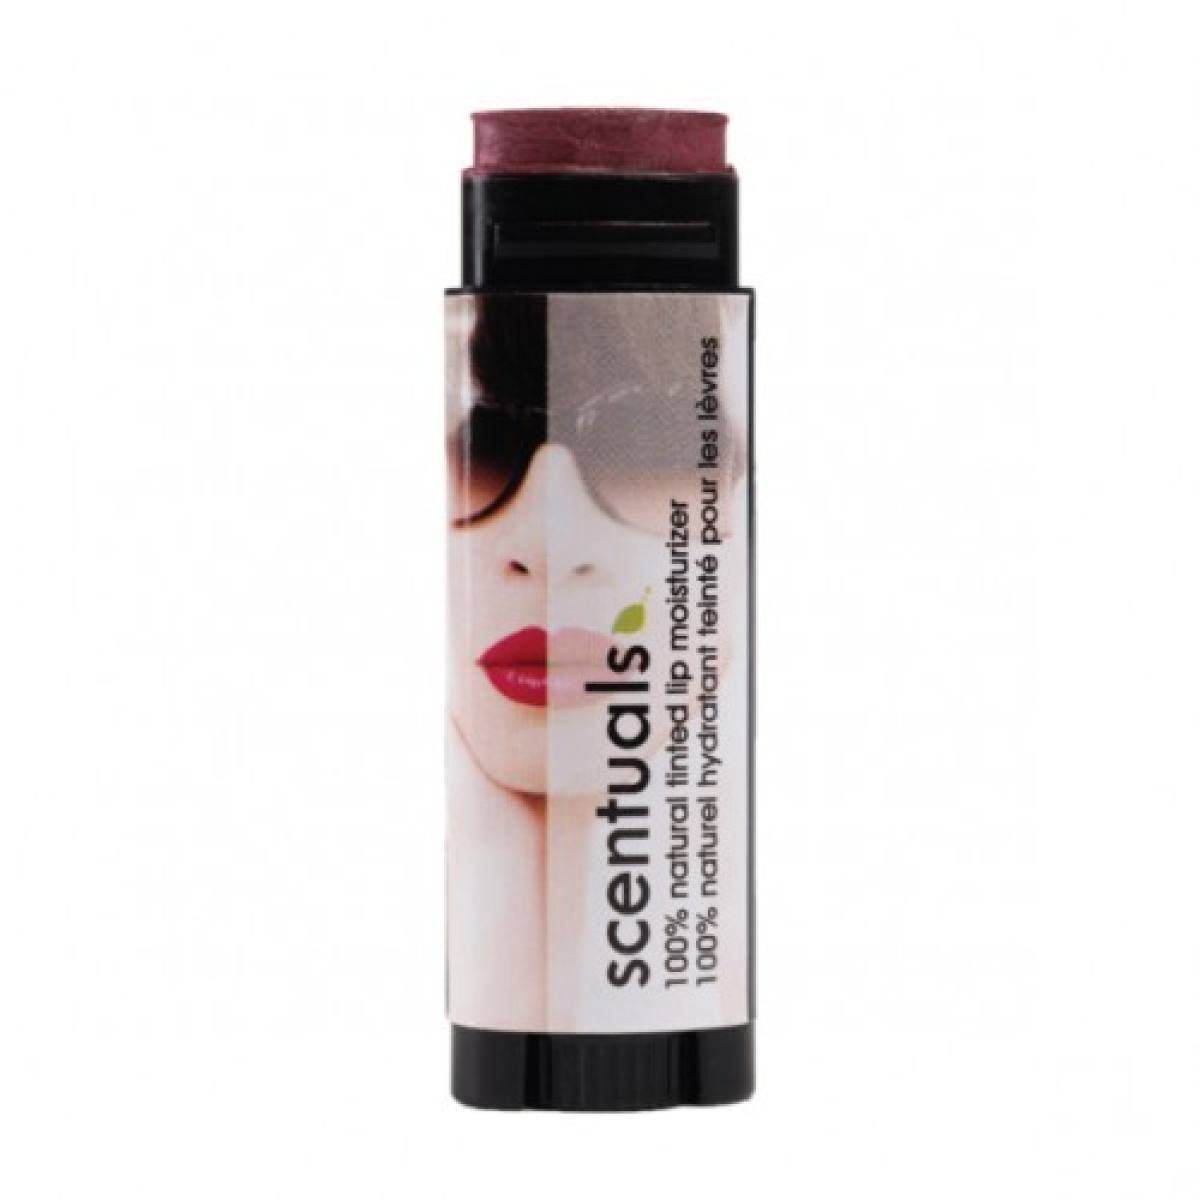  Son dưỡng màu rượu đỏ (cá tính) 5g (100% Natural Tinted Lip Moisturizer - Bombshell) 